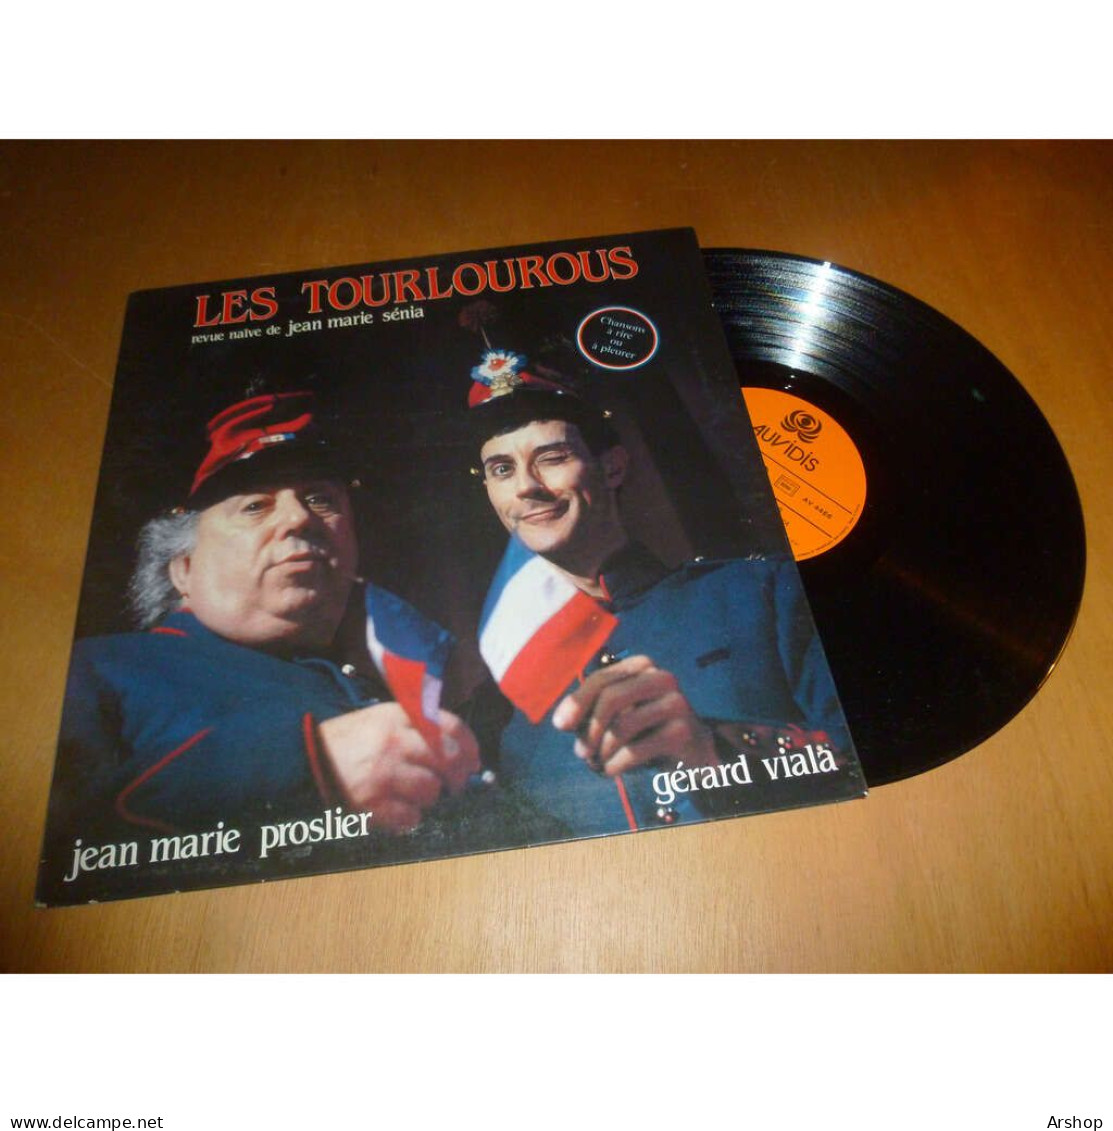 JEAN MARIE PROSLIER & GERARD VIALA Les Trourlourous - Revue Naïve De Jean Marie Senia AUVIDIS Lp 1985 - Other - French Music